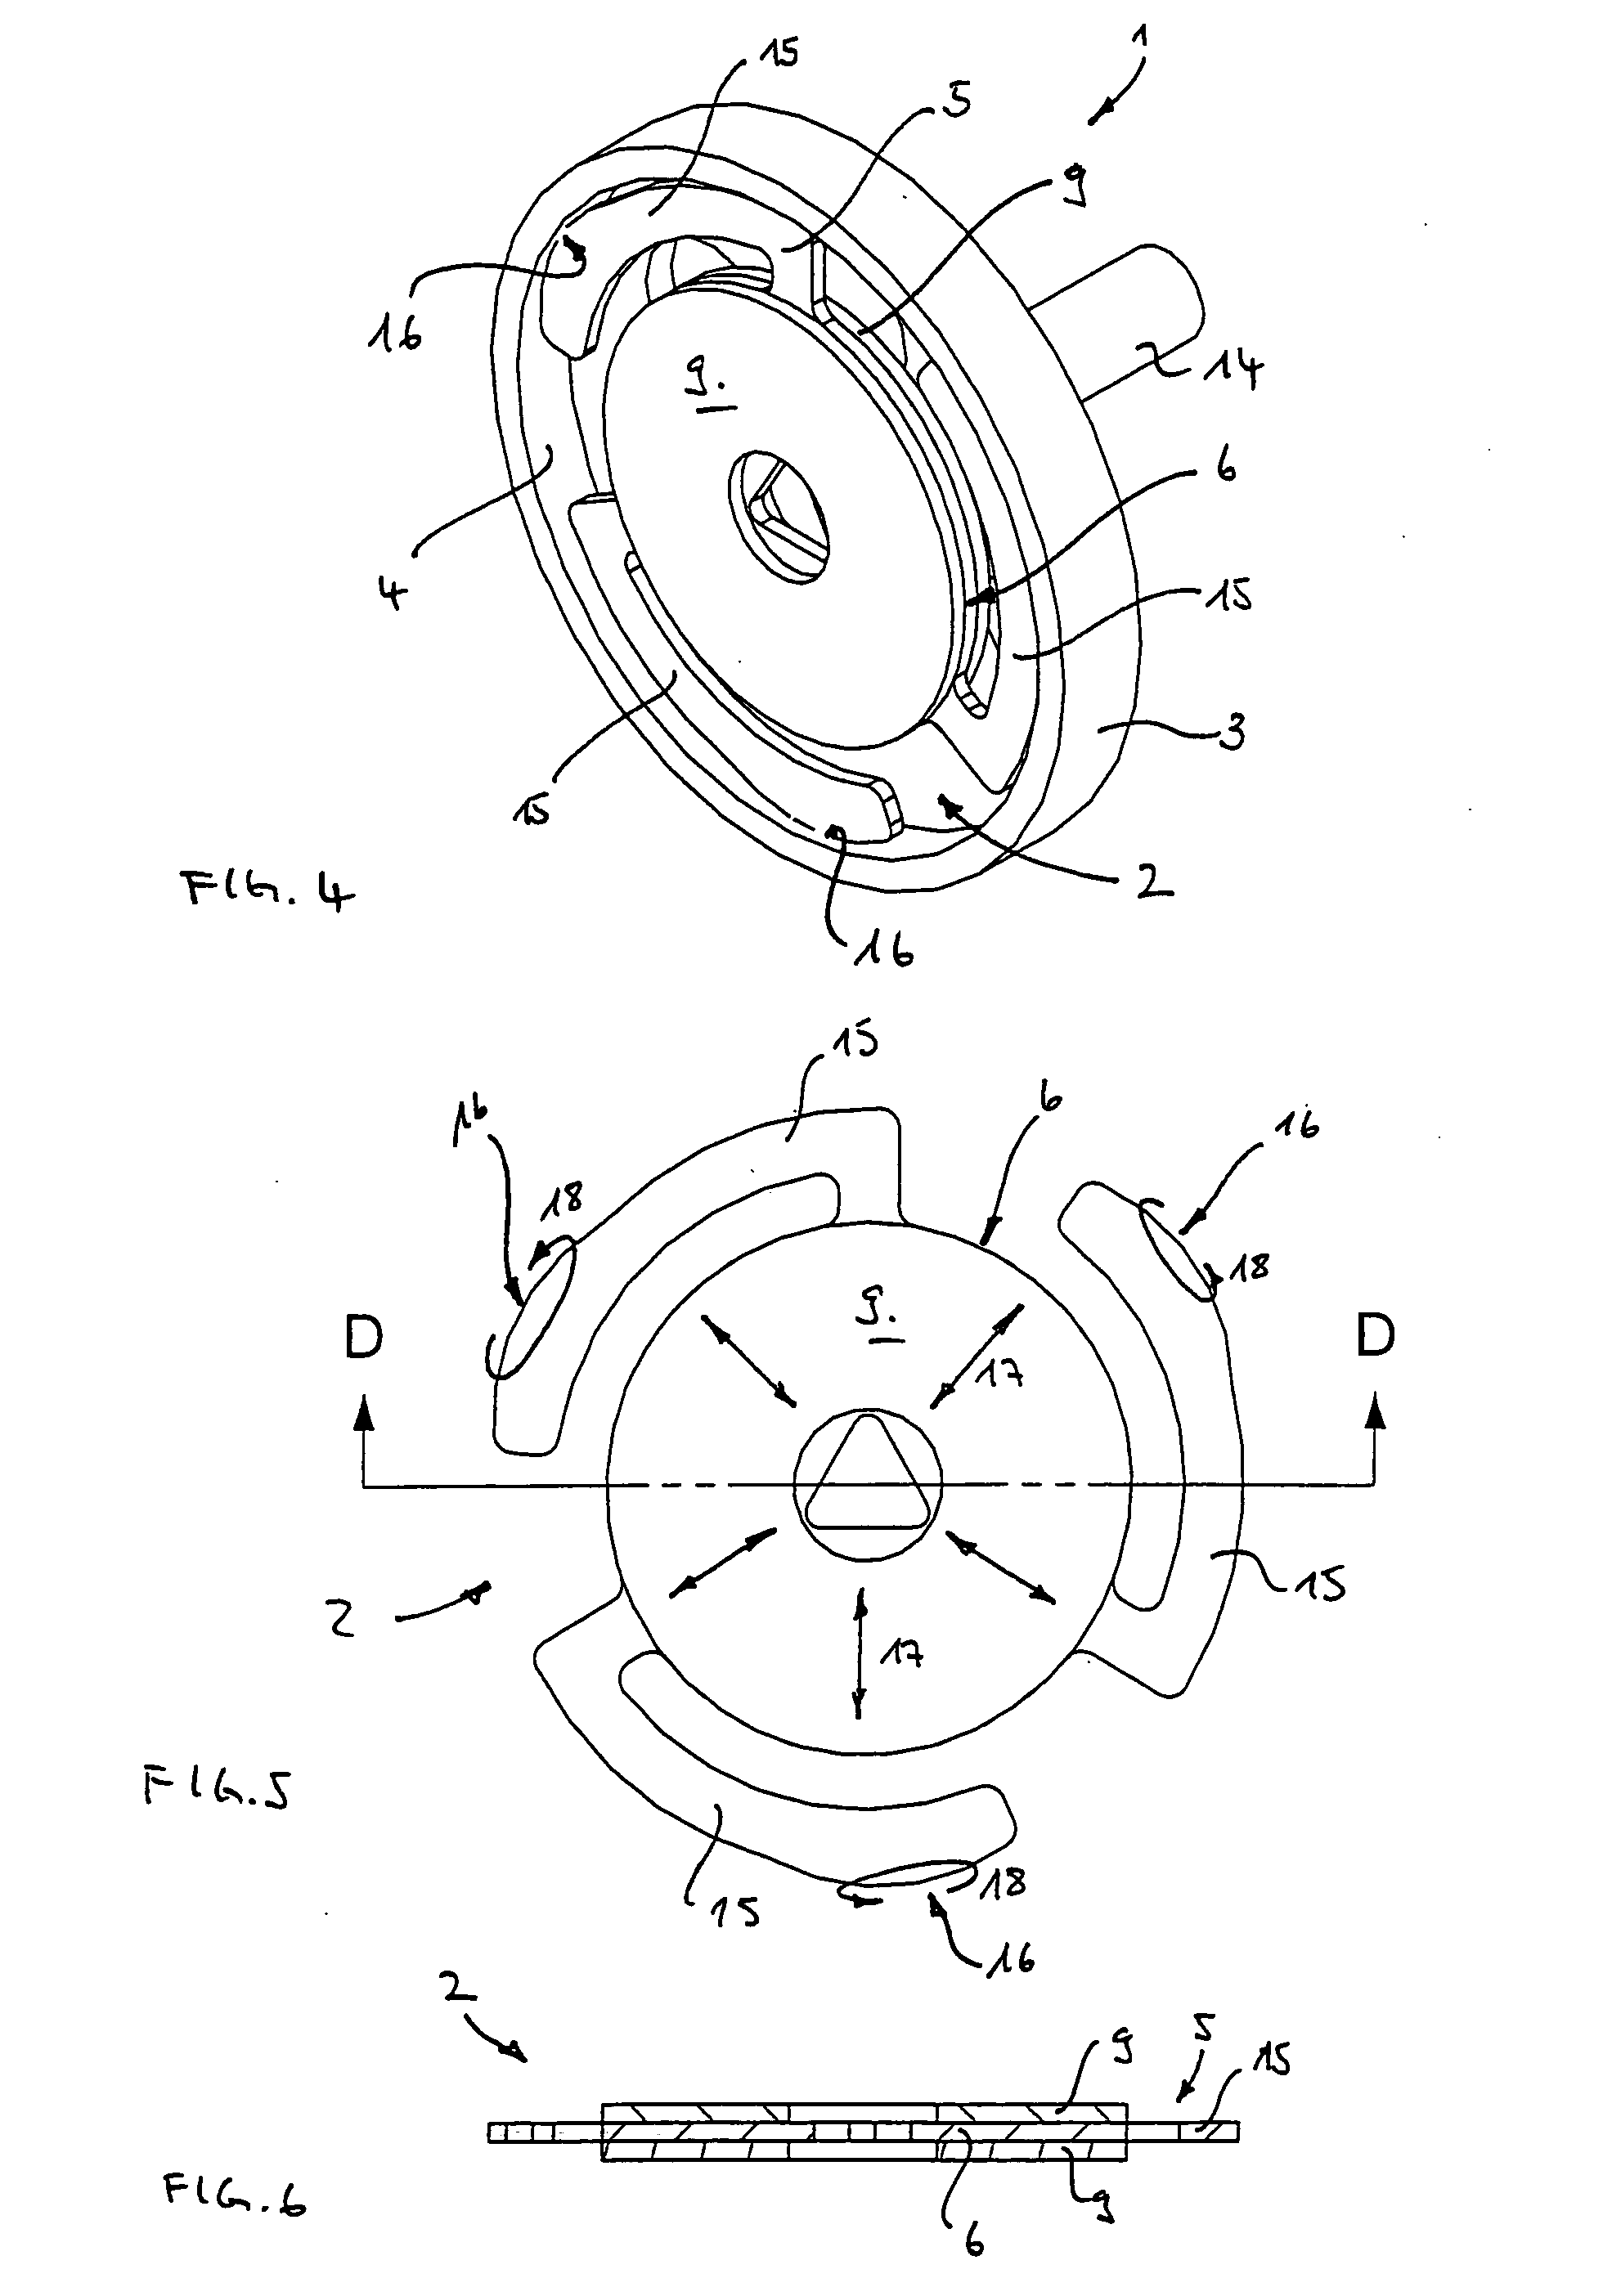 Piezoelectric motor